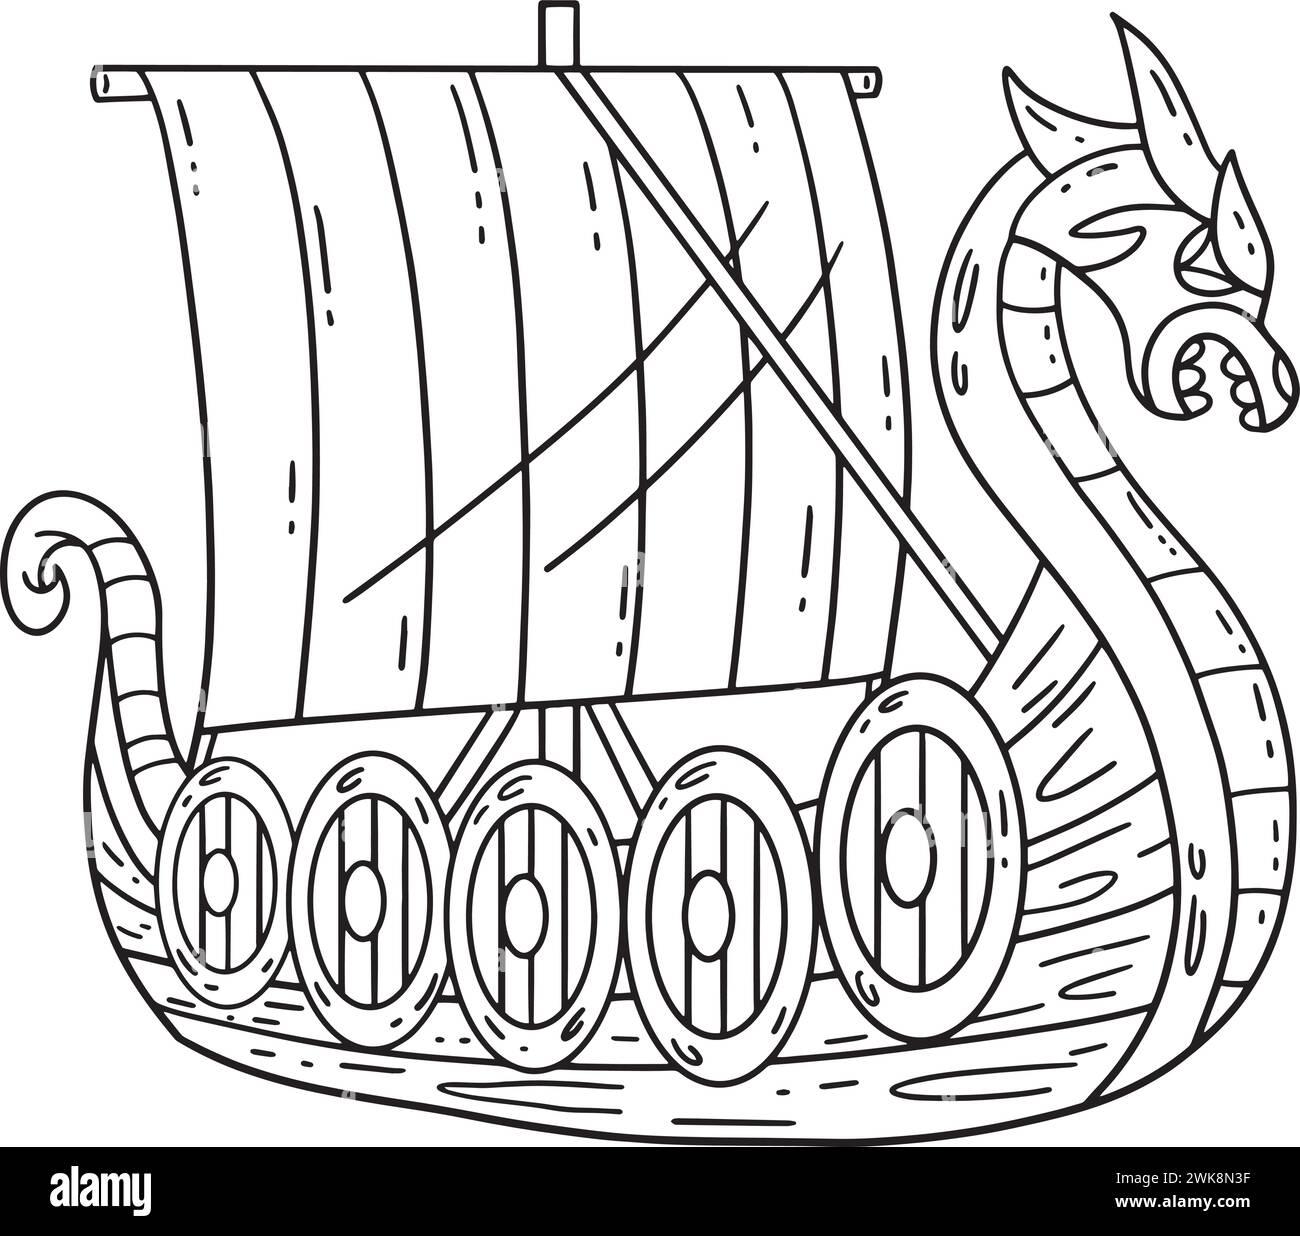 Pagina da colorare isolata della nave vichinga per bambini Illustrazione Vettoriale